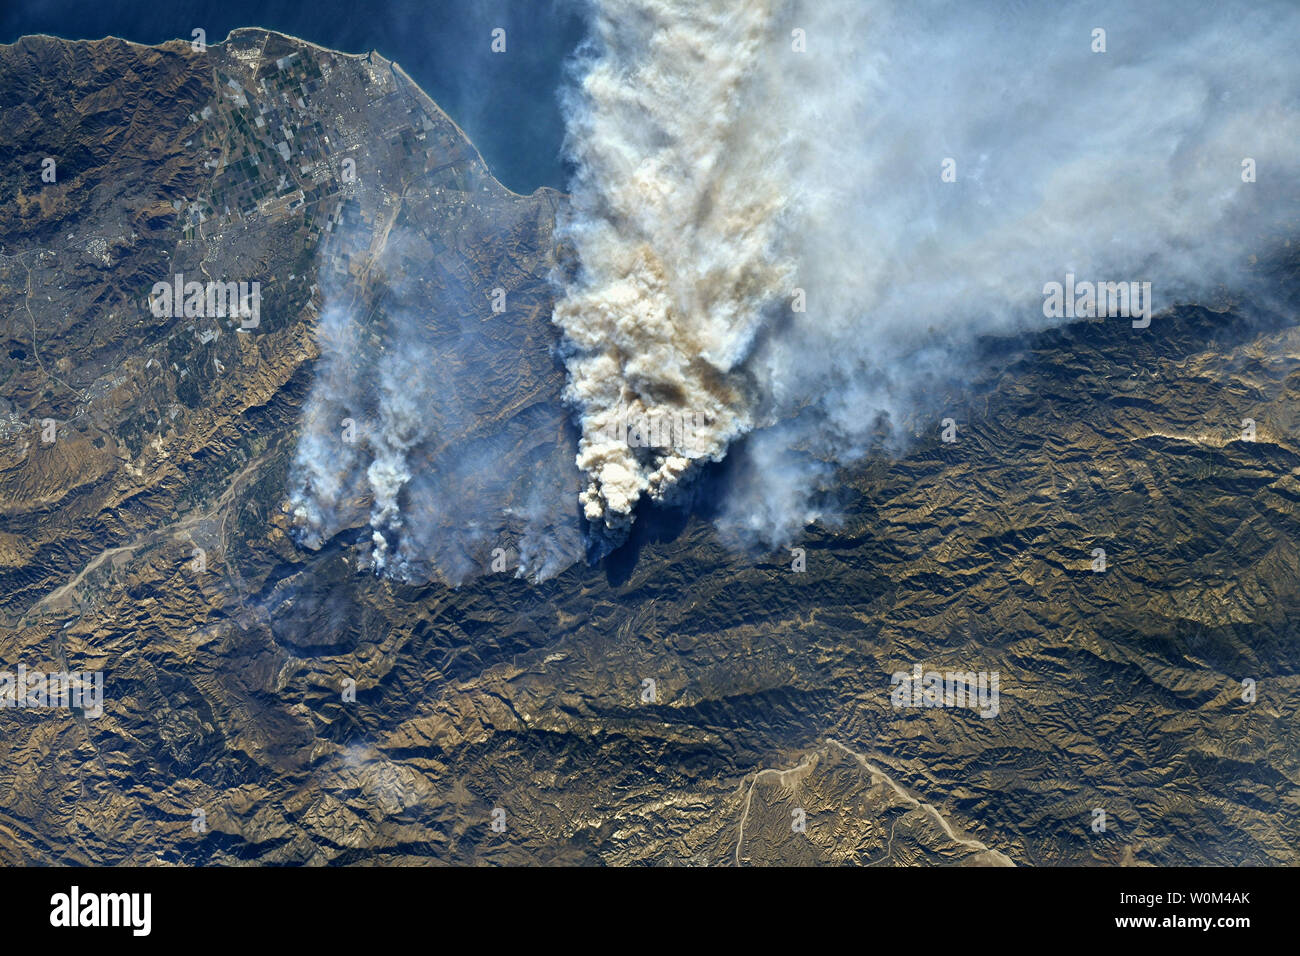 Les incendies dans le sud de la Californie ont été photographiées par l'astronaute de la NASA Randy Bresnik à partir de la Station spatiale internationale au cours d'un survol de la région le 7 décembre 2017. Regarder les panaches de fumée provenant de l'espace, Bresnik observé, "Aujourd'hui de passer sur SoCal, malheureusement, n'a pas l'air mieux. Les incendies à l'est du Camp Pendleton et dans Baja sont visibles aussi bien.' Ce brasier qui a été décrit par les pompiers comme une 'zone de guerre' a commencé il y a trois jours seulement le 4 décembre. Brûlant plus de 96 000 hectares et 150 structures à ce jour pour Inciweb ce feu a été poussée par un Banque D'Images